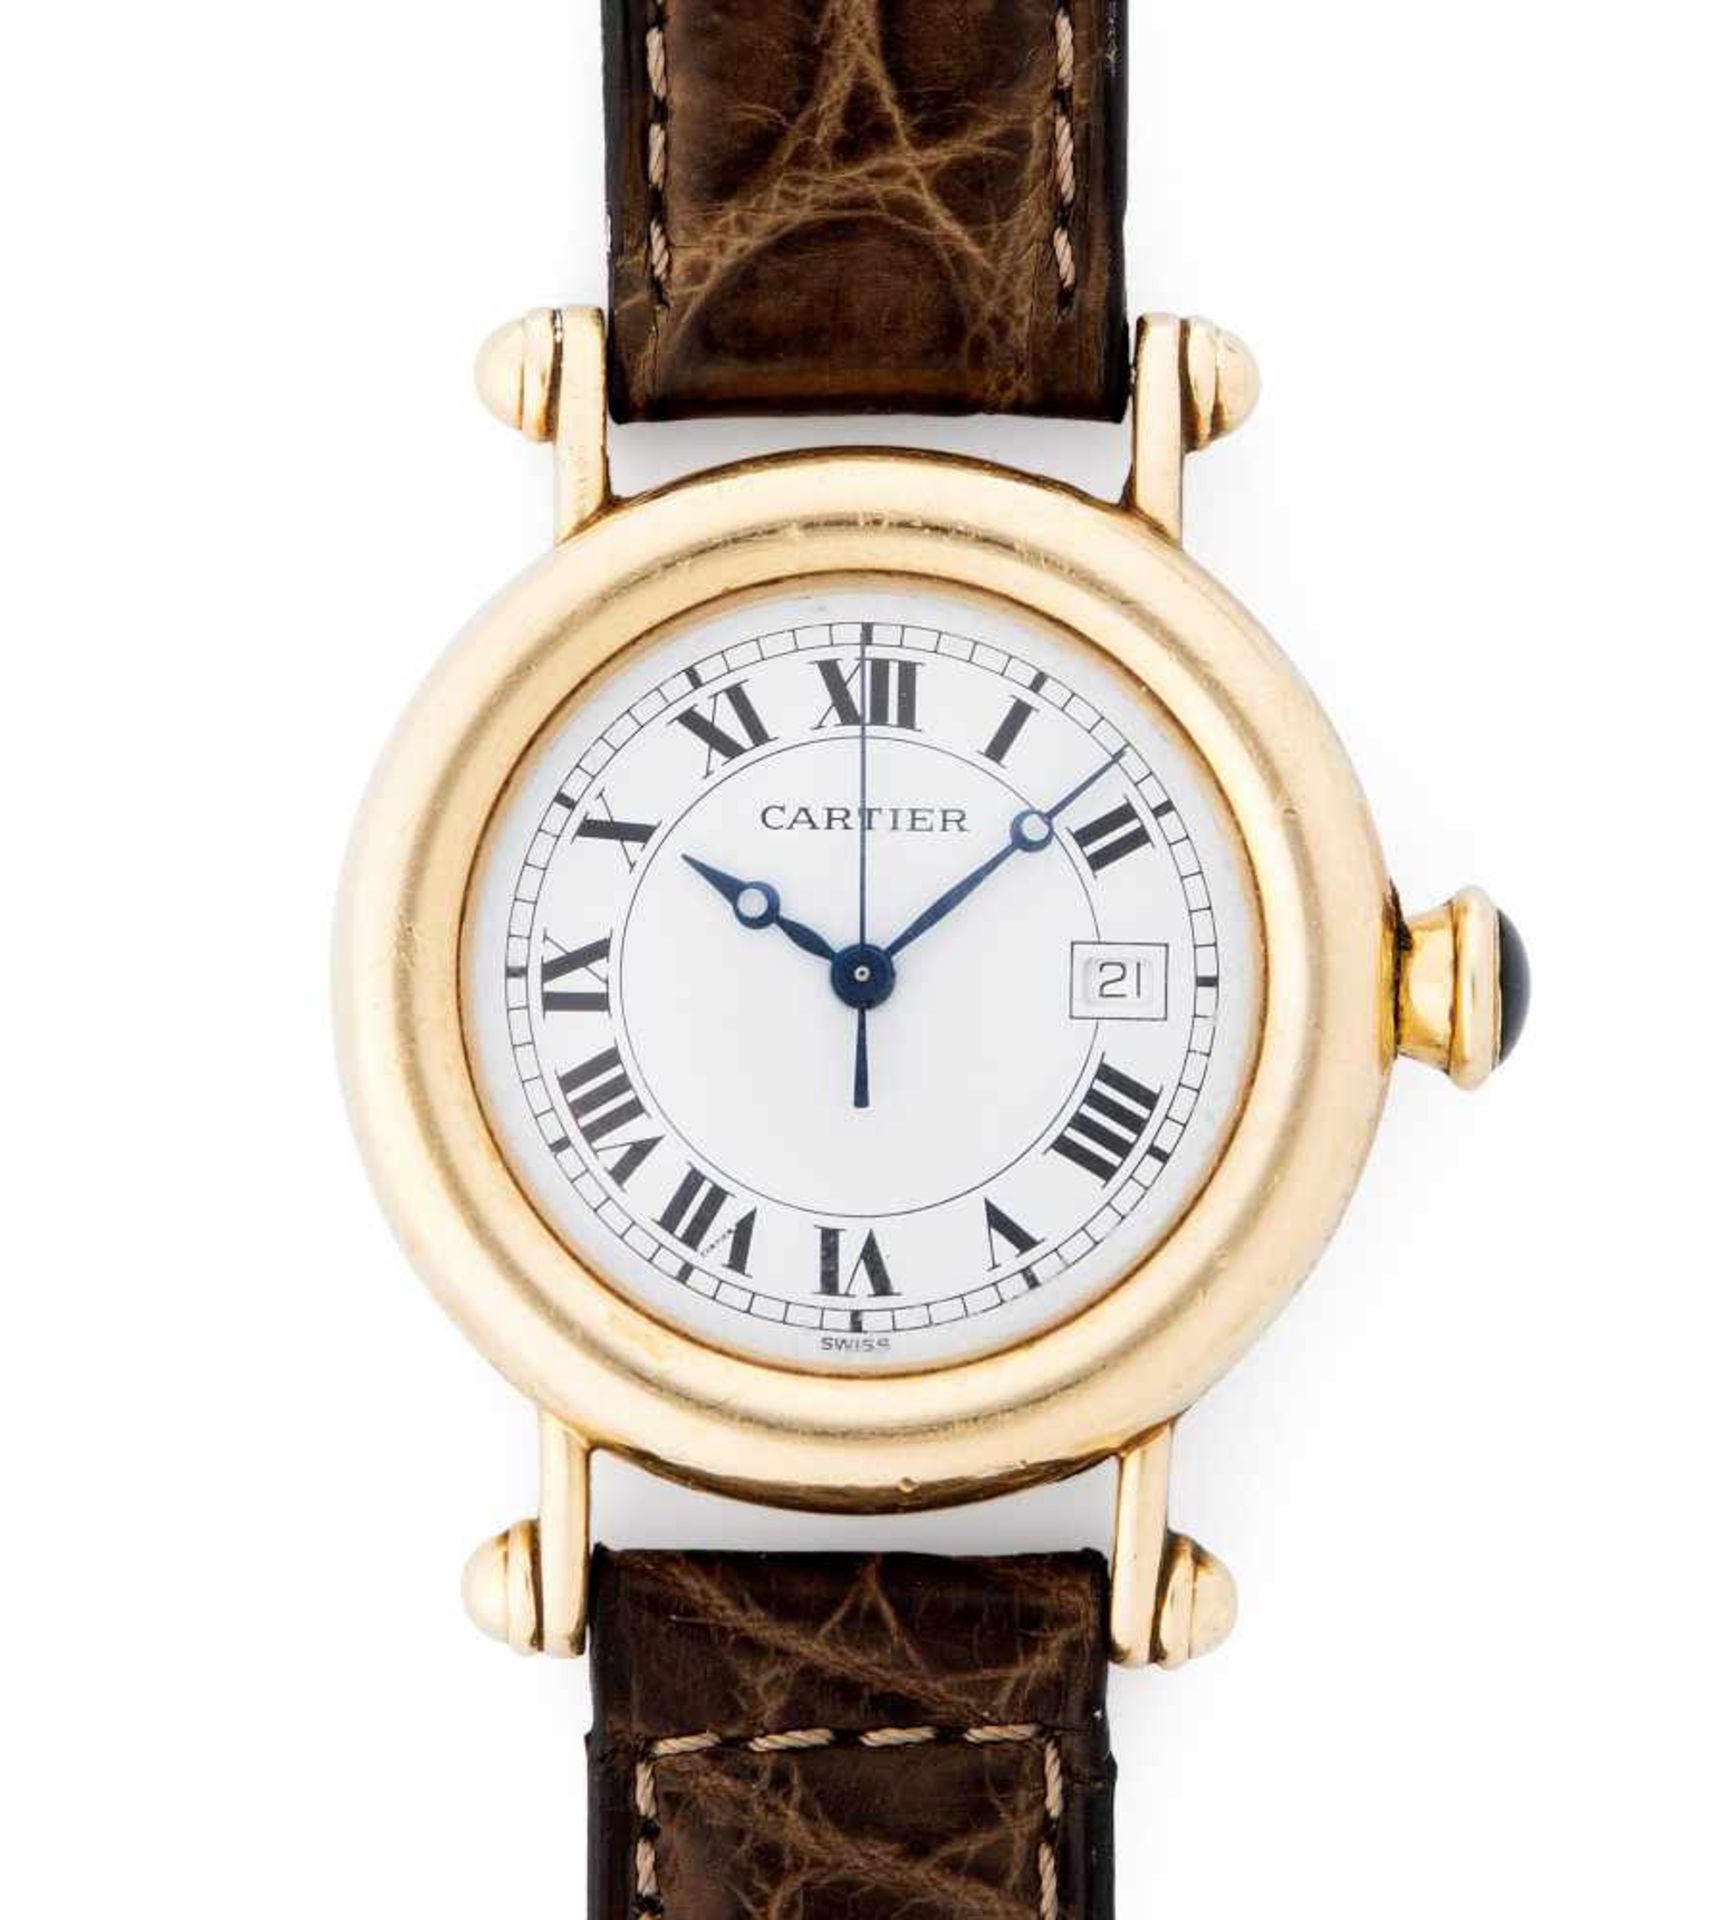 Cartier DiaboloRunde Armbanduhr 1994 mit Quarzwerk in 750 Gelbgoldgehäuse und Faltschliesse ca. 30